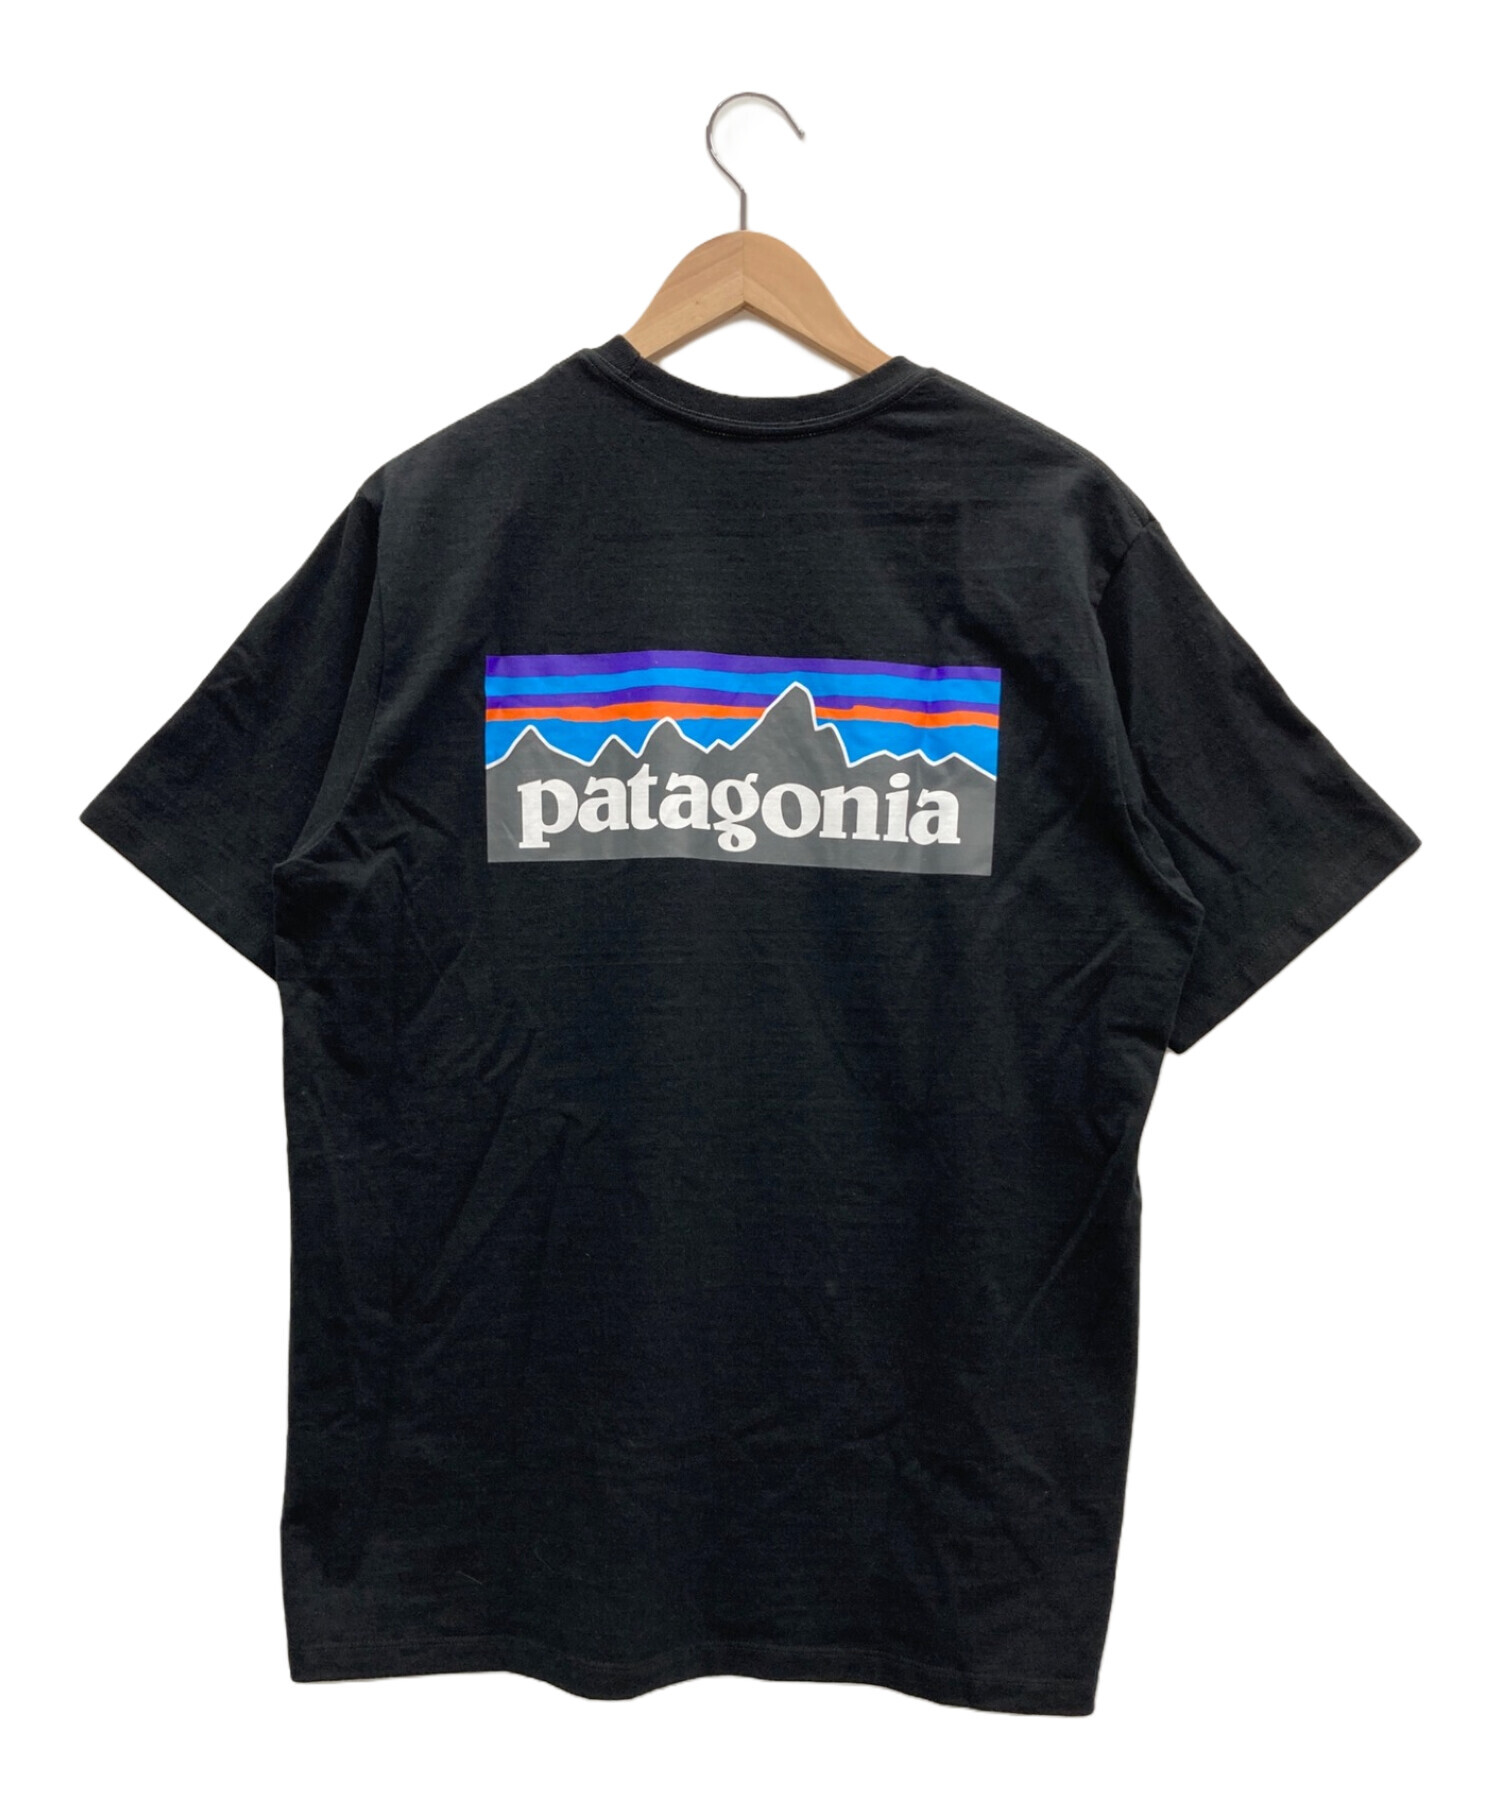 Patagonia (パタゴニア) バックプリントTシャツ ブラック サイズ:M 未使用品